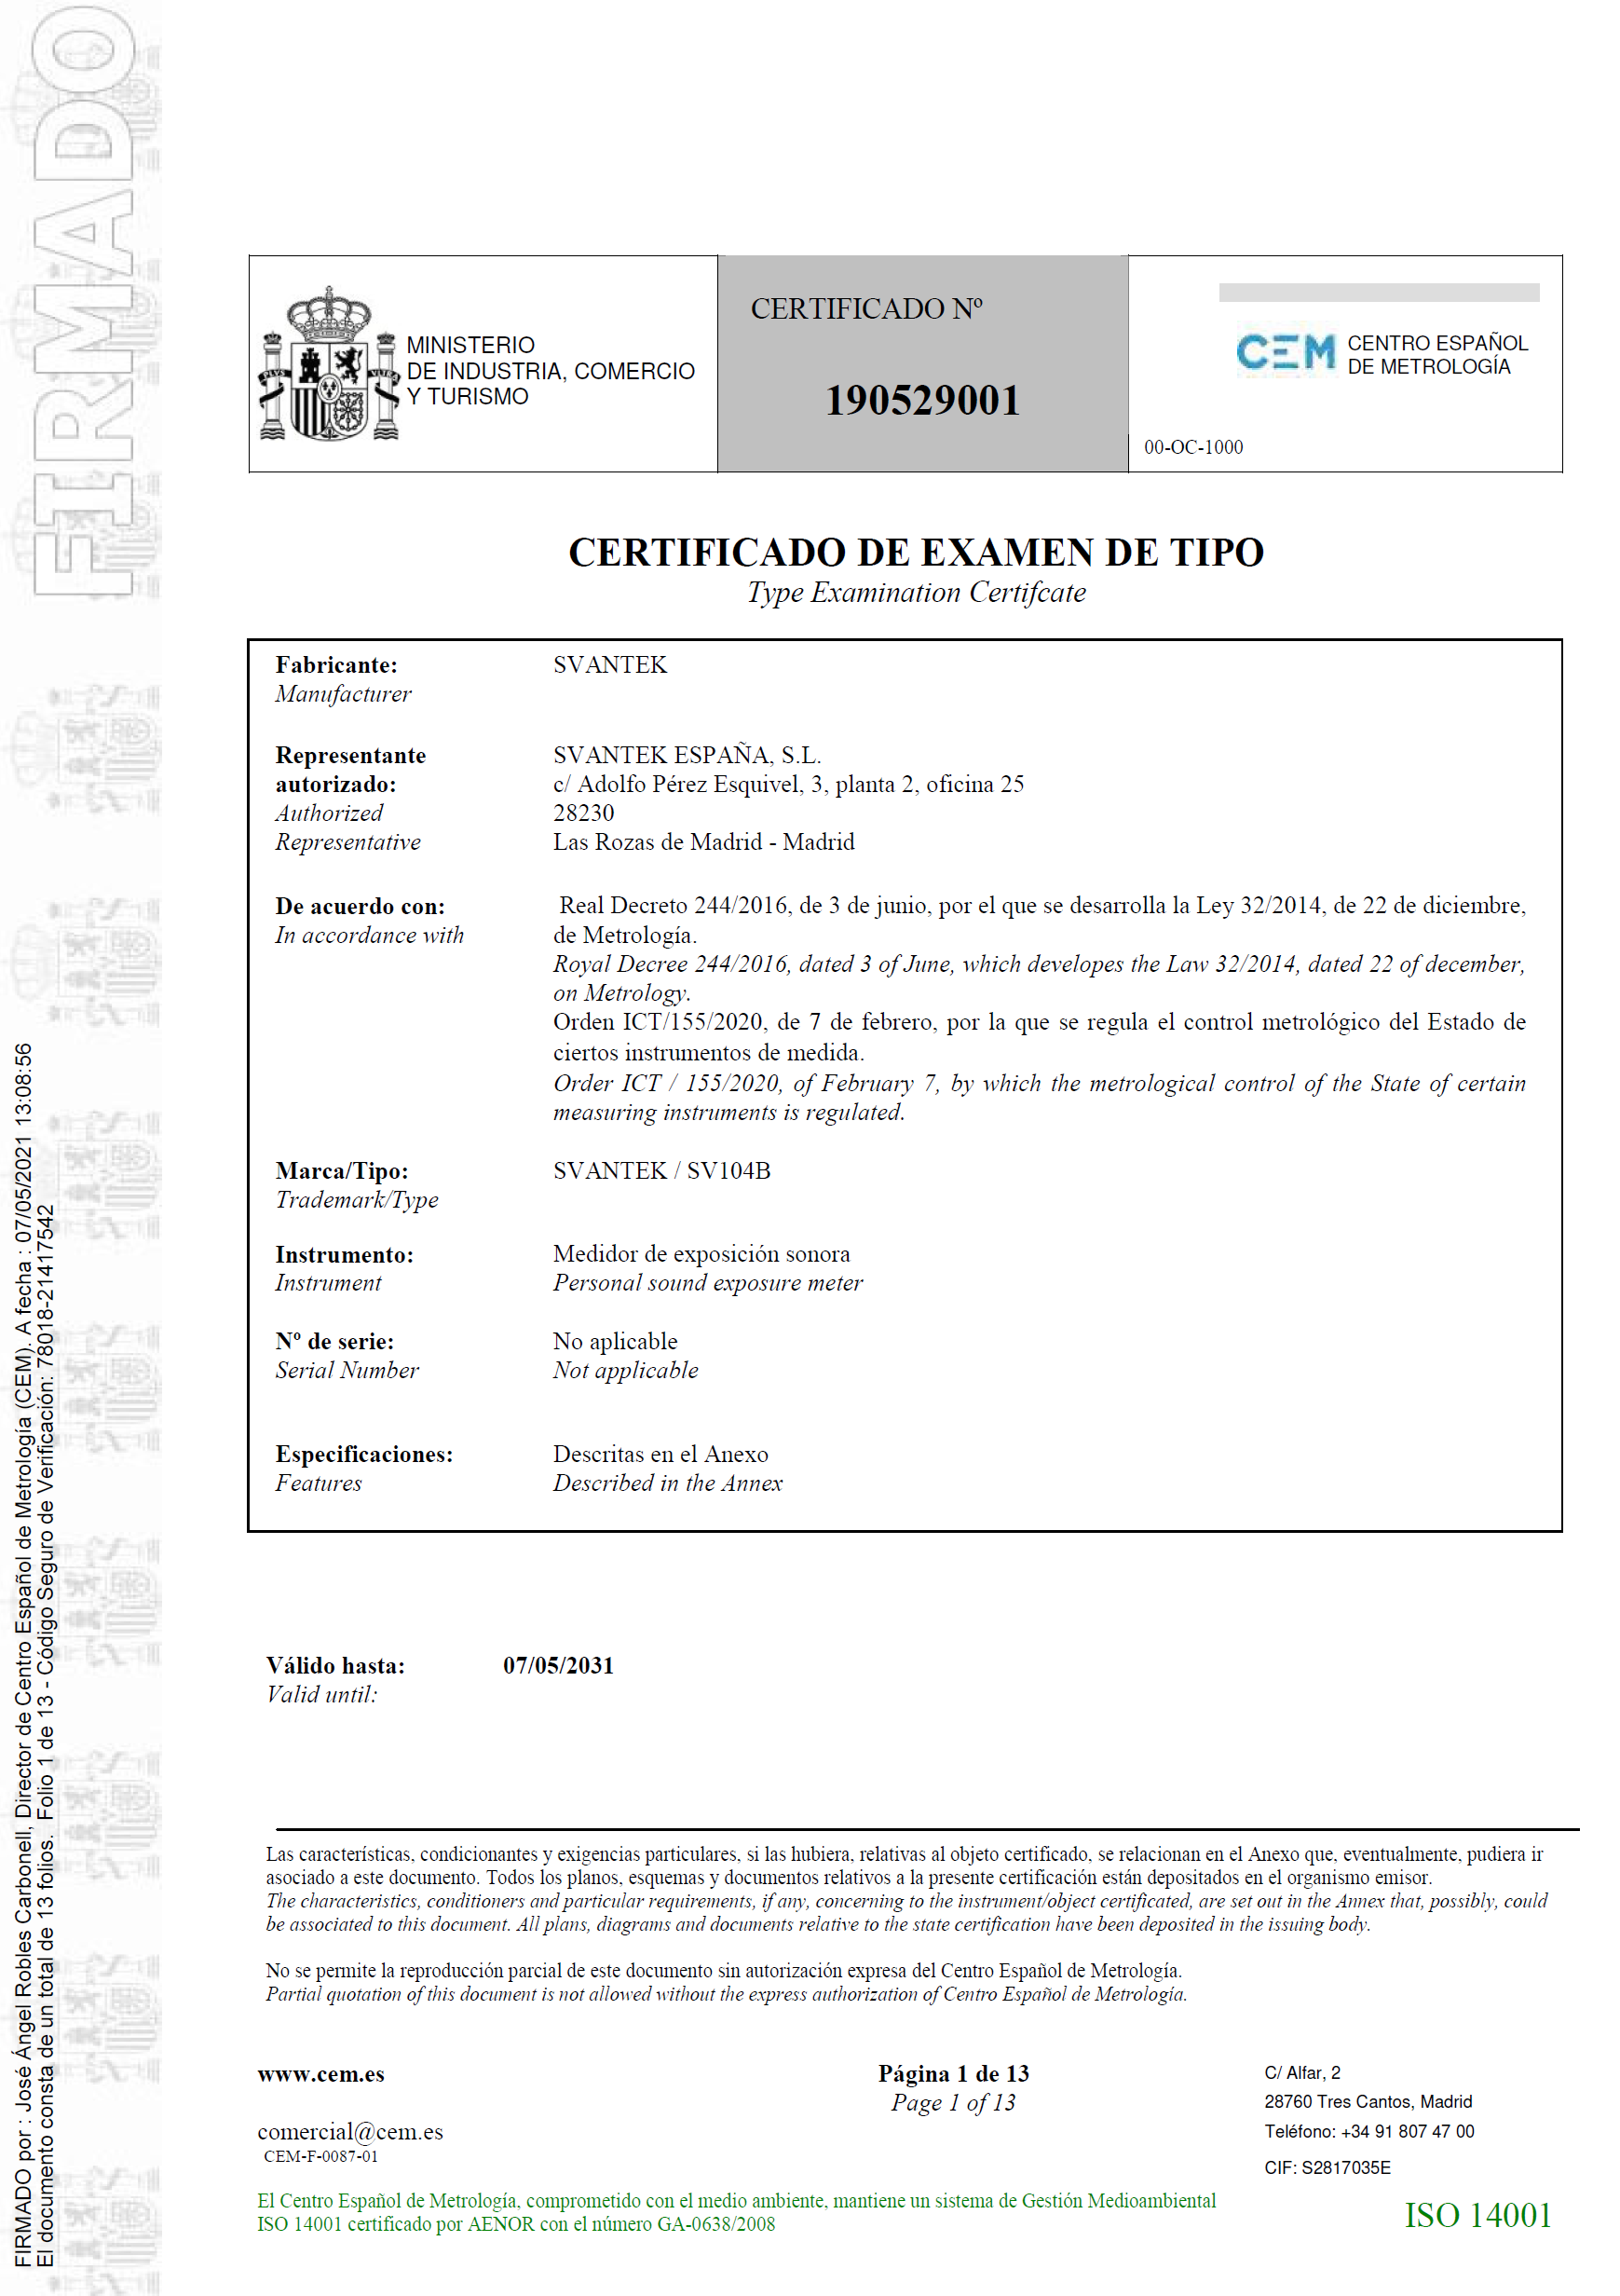 Certificado de examen de tipo nº 190529001